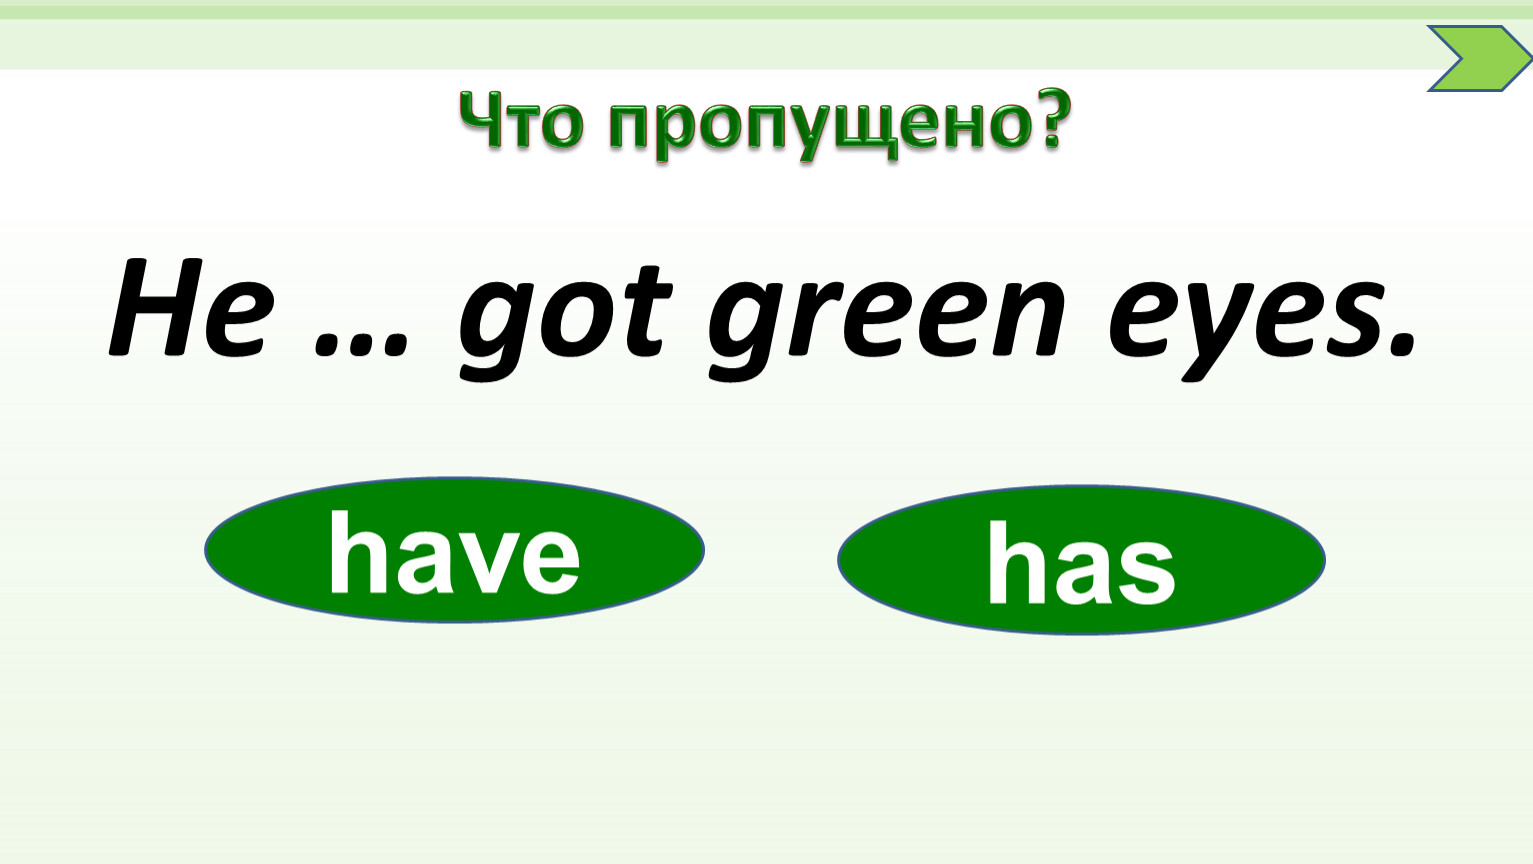 Has got Green Eyes. Get Green. Got Green Eyes. Маме has got Green Eyes. He got green eyes